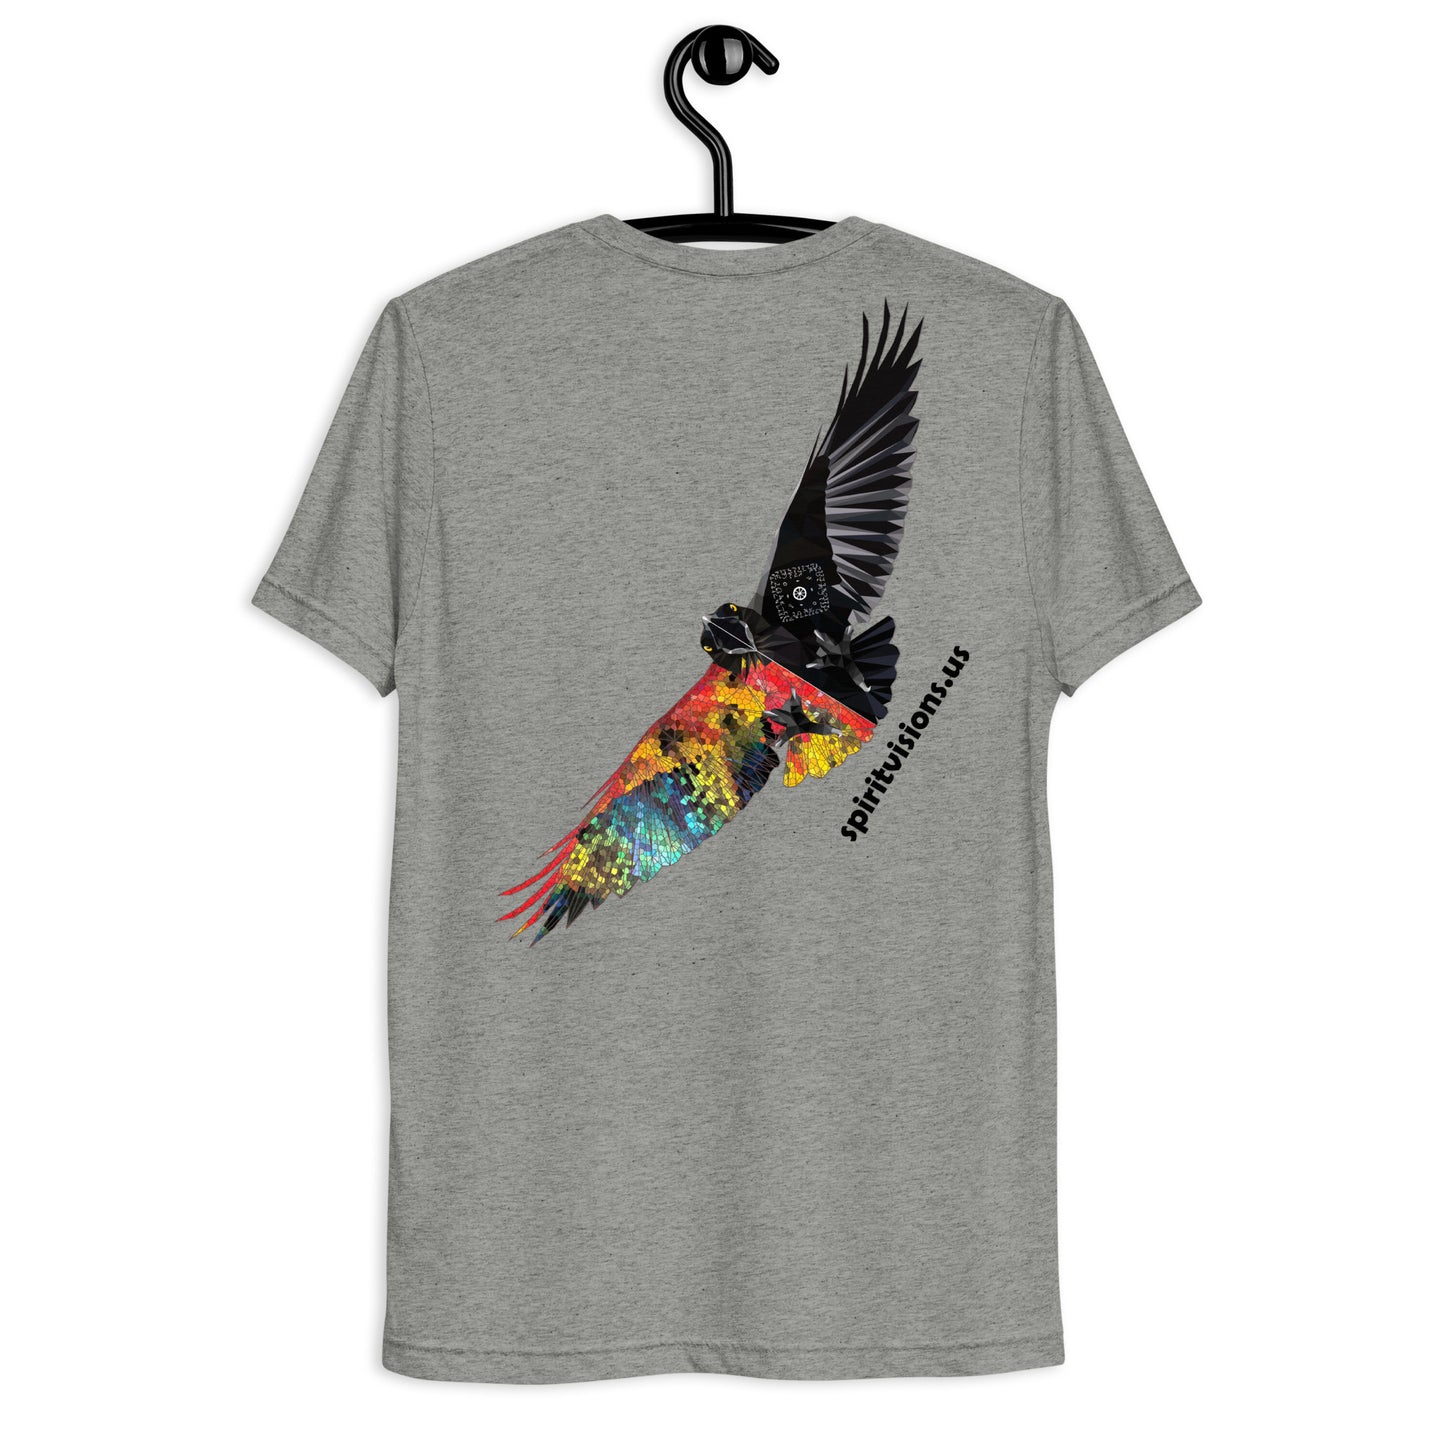 Camiseta unisex de manga corta "Big Bird"